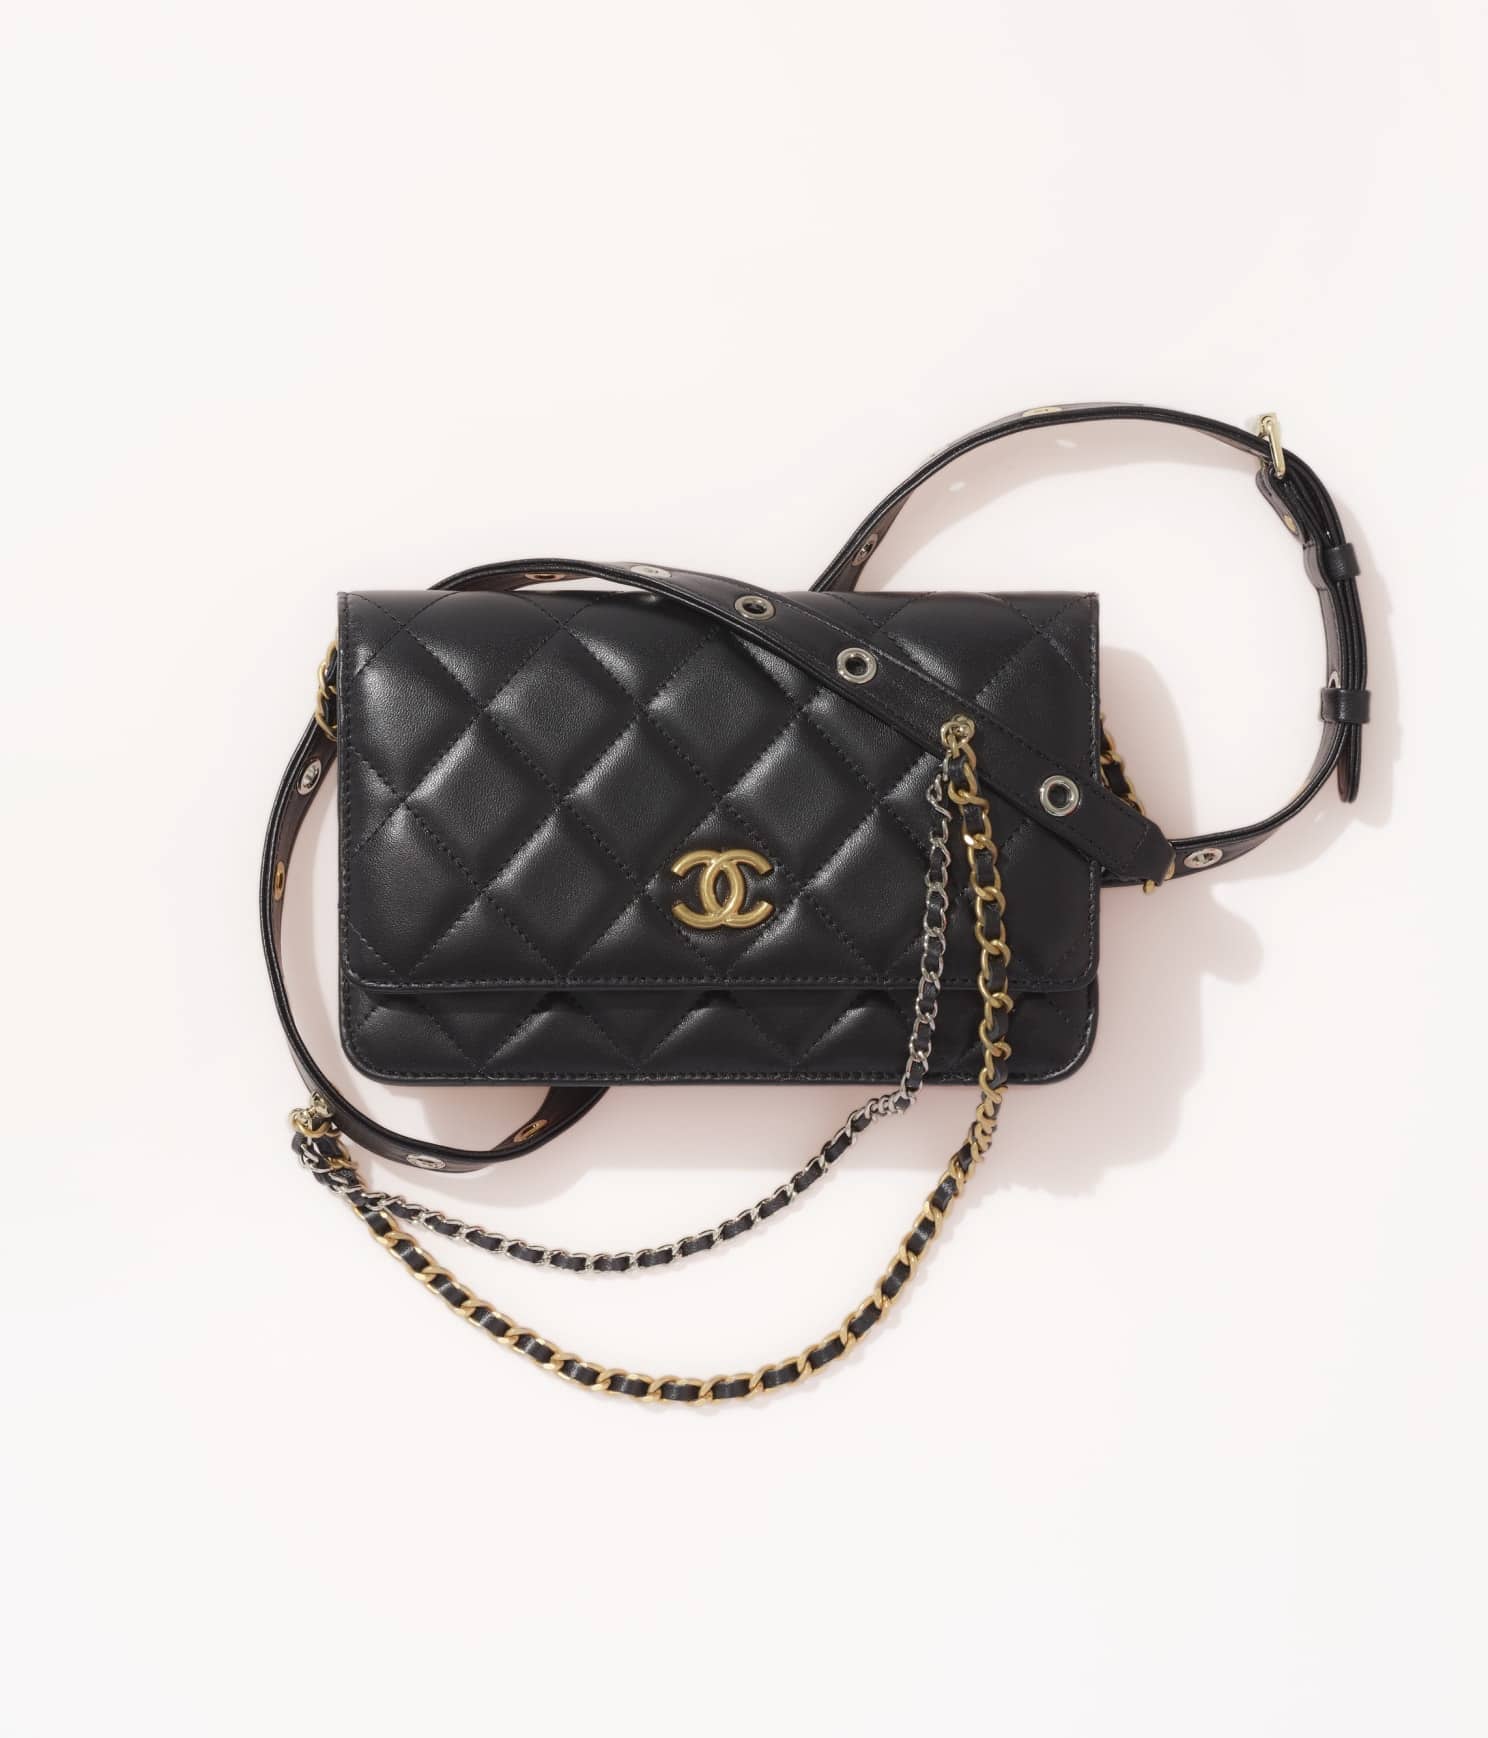 Chanel Fall Winter 2018 Seasonal Bag Collection Act 2